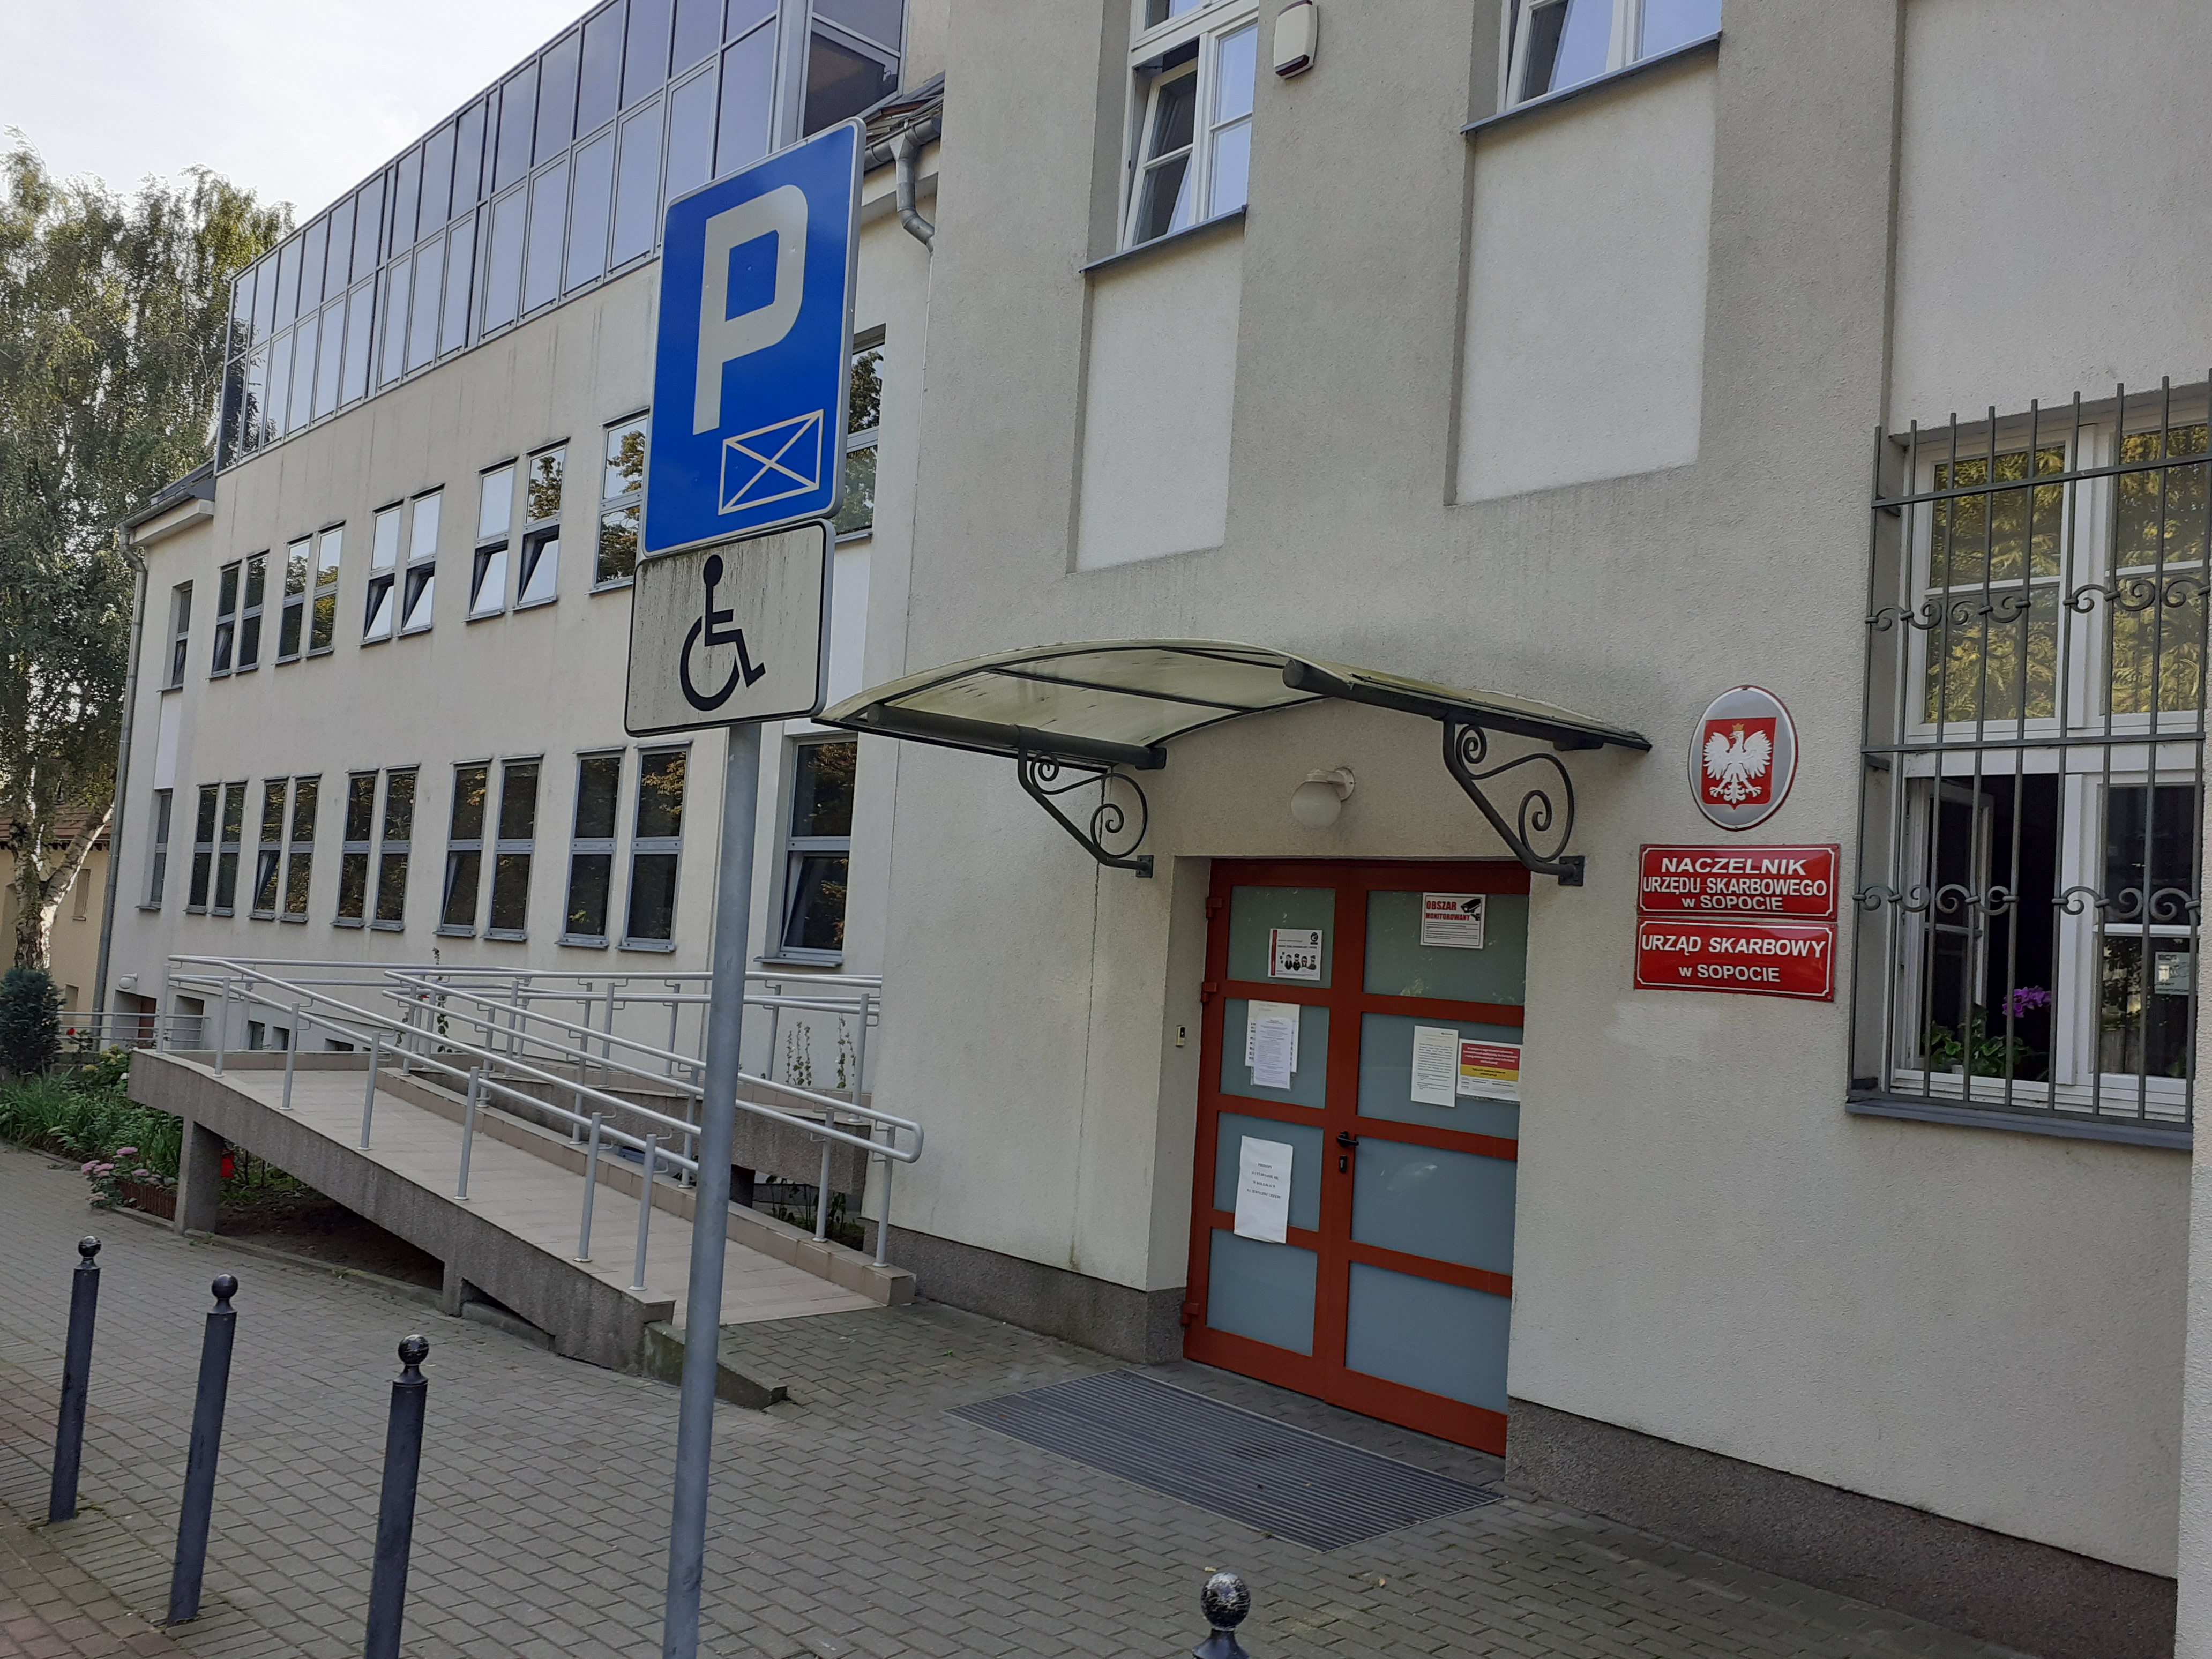 Wejście do budynku, w którym znajduje się siedziba Urzędu Skarbowego w Sopocie